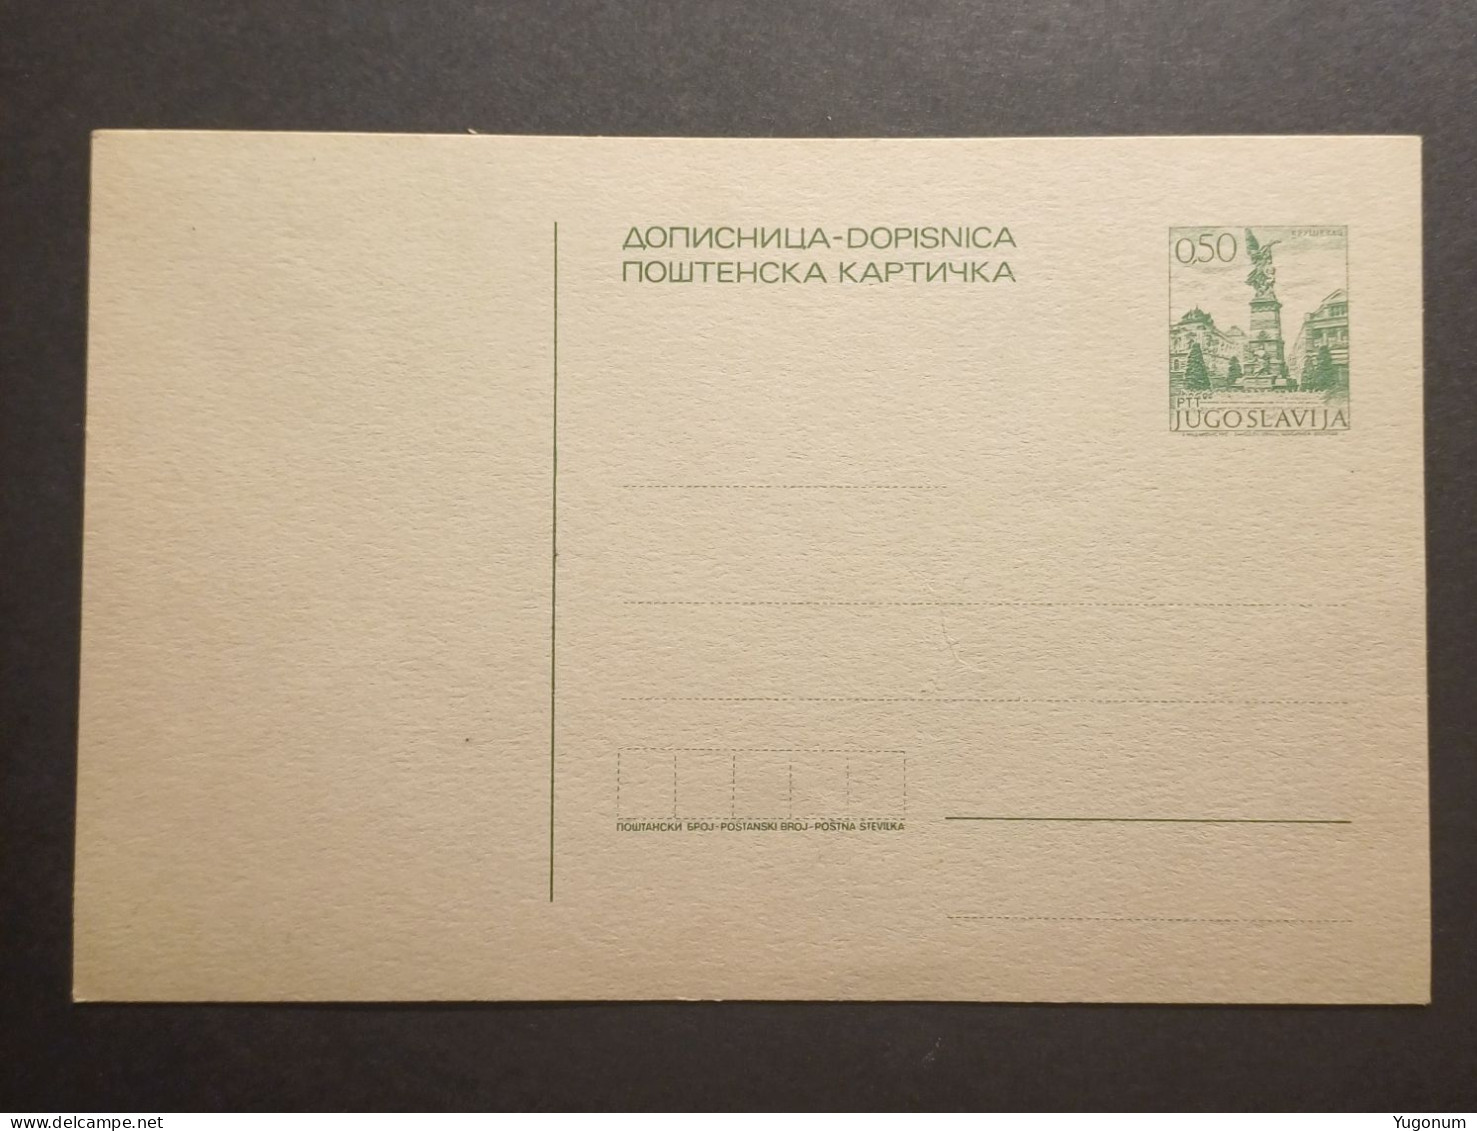 Yugoslavia Slovenia 1970's Unused Stationary Card "dopisnica" With Preprinted 0,50 Dinara Stamp (No 3010) - Briefe U. Dokumente